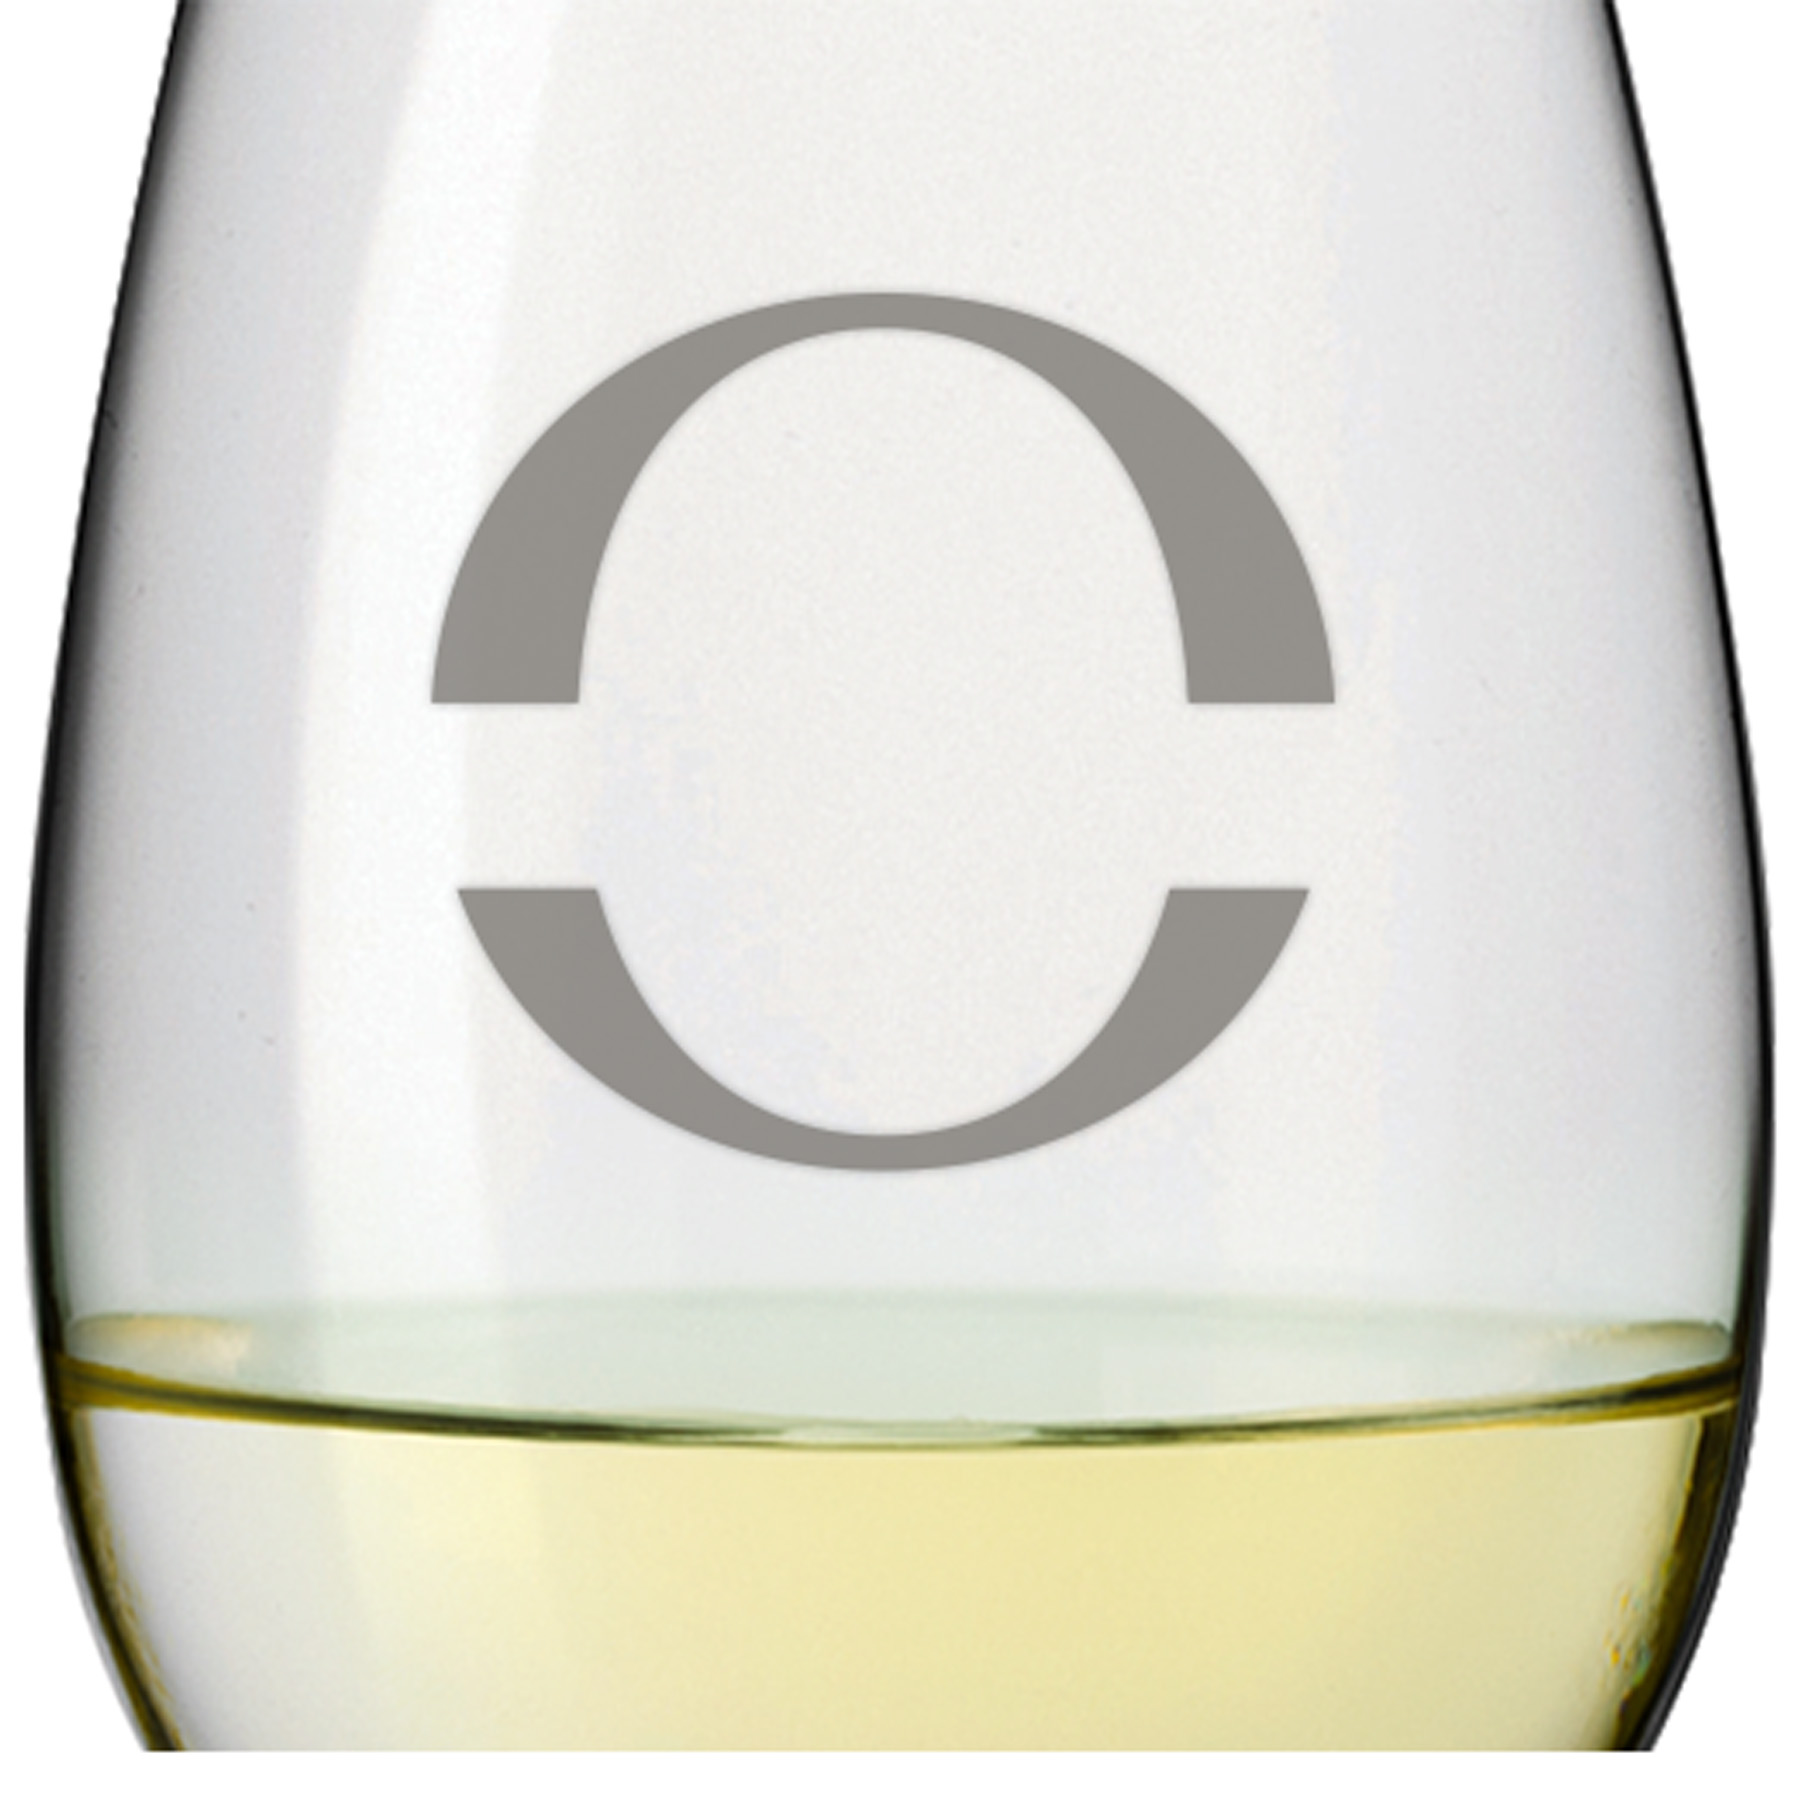 Leonardo Weißweinglas DAILY 370ml mit Namen oder Wunschtext graviert (Initialen)